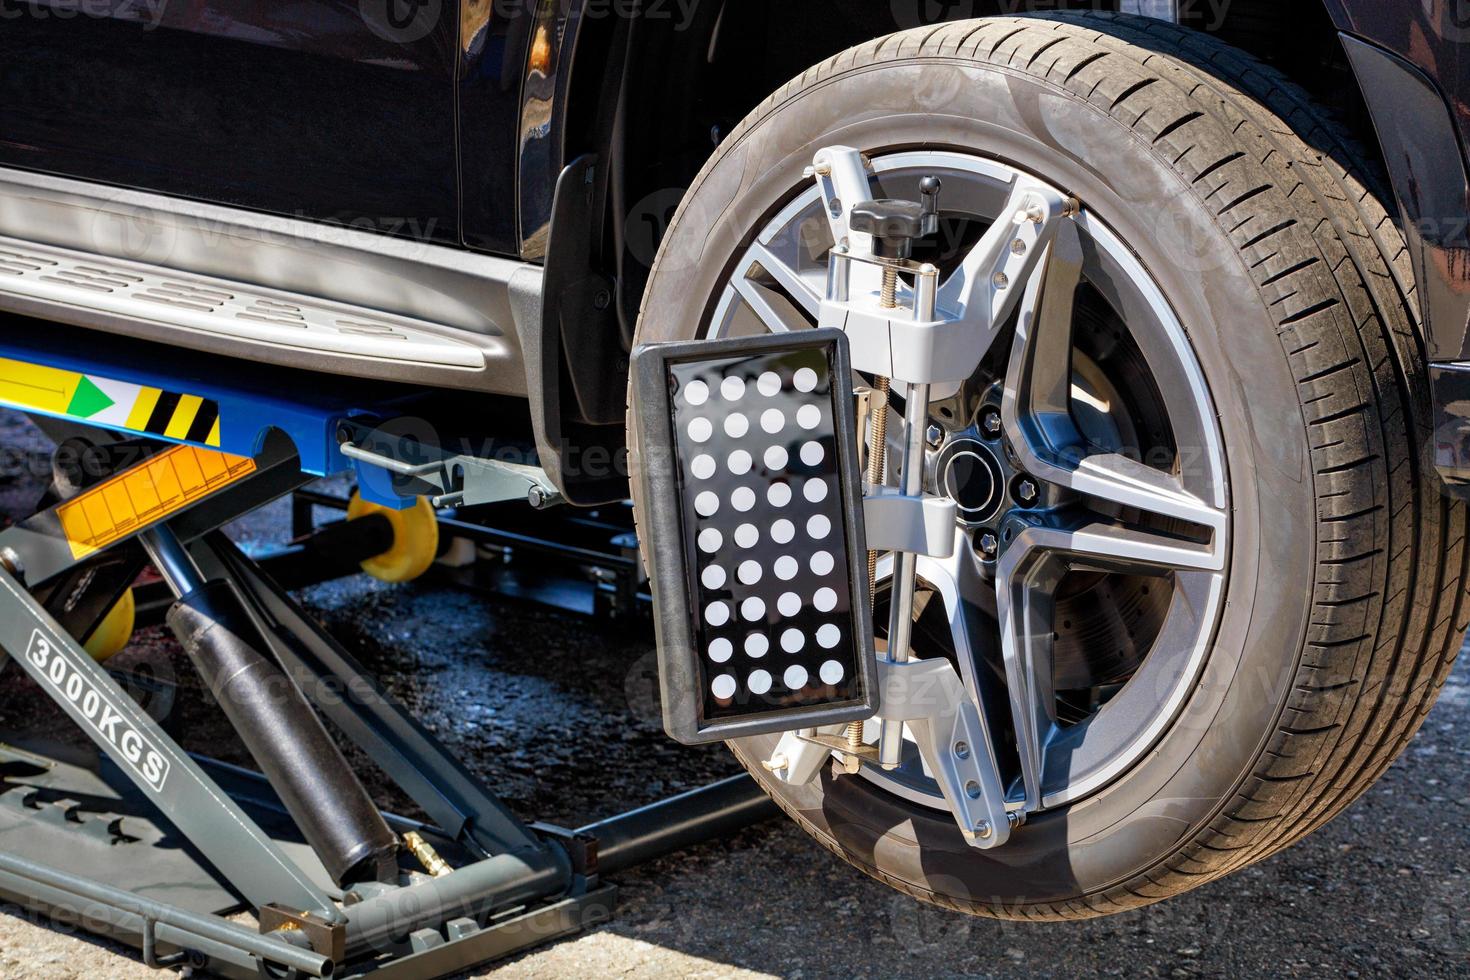 martinetto mobile per il sollevamento di veicoli per regolare campanatura e assetto ruote. foto